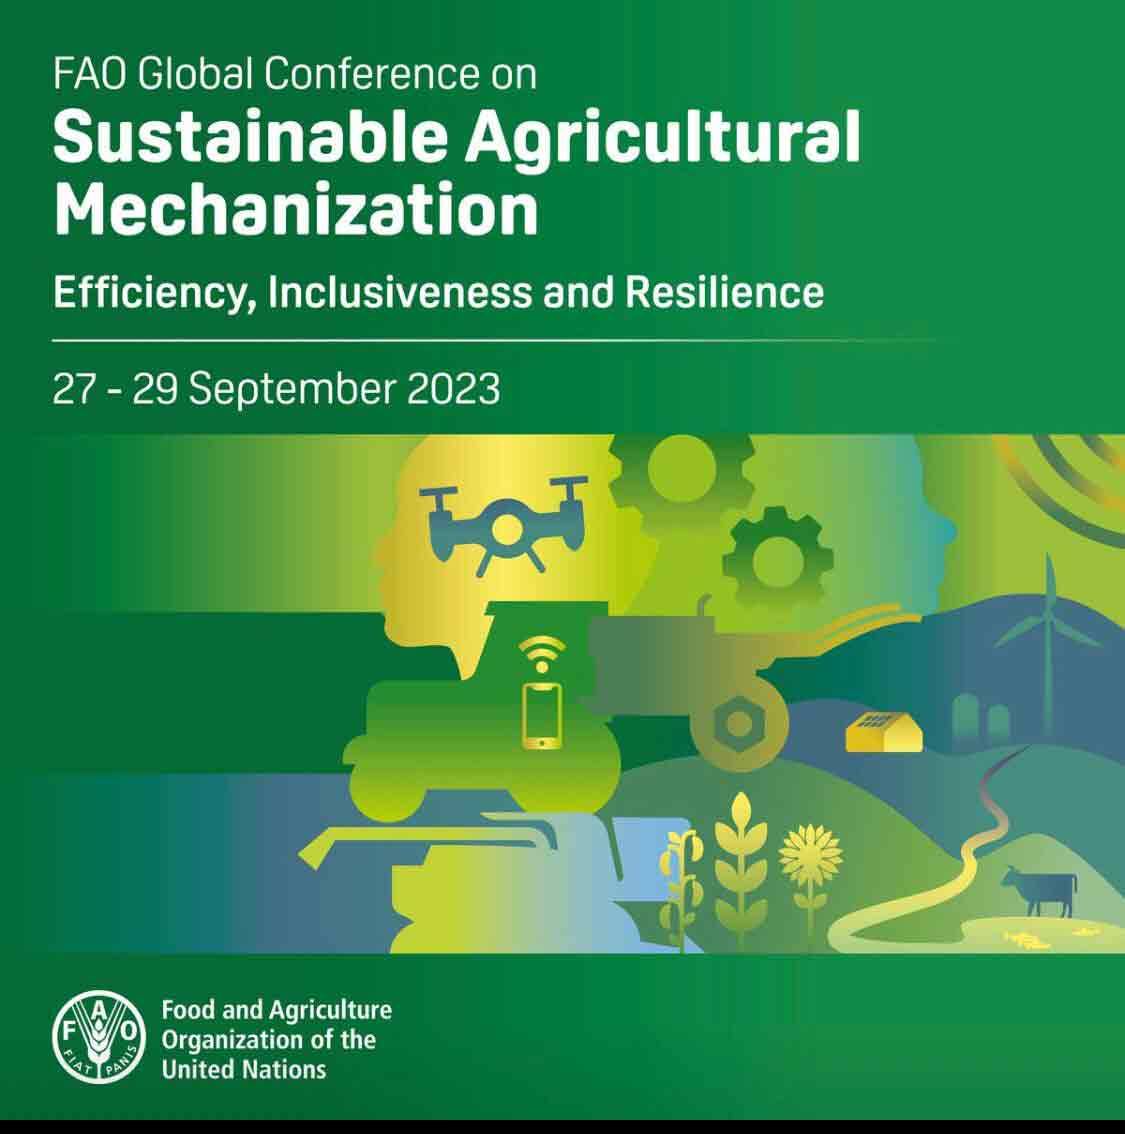 برگزاری اولین کنفرانس جهانی مکانیزاسیون کشاورزی پایدار در رم